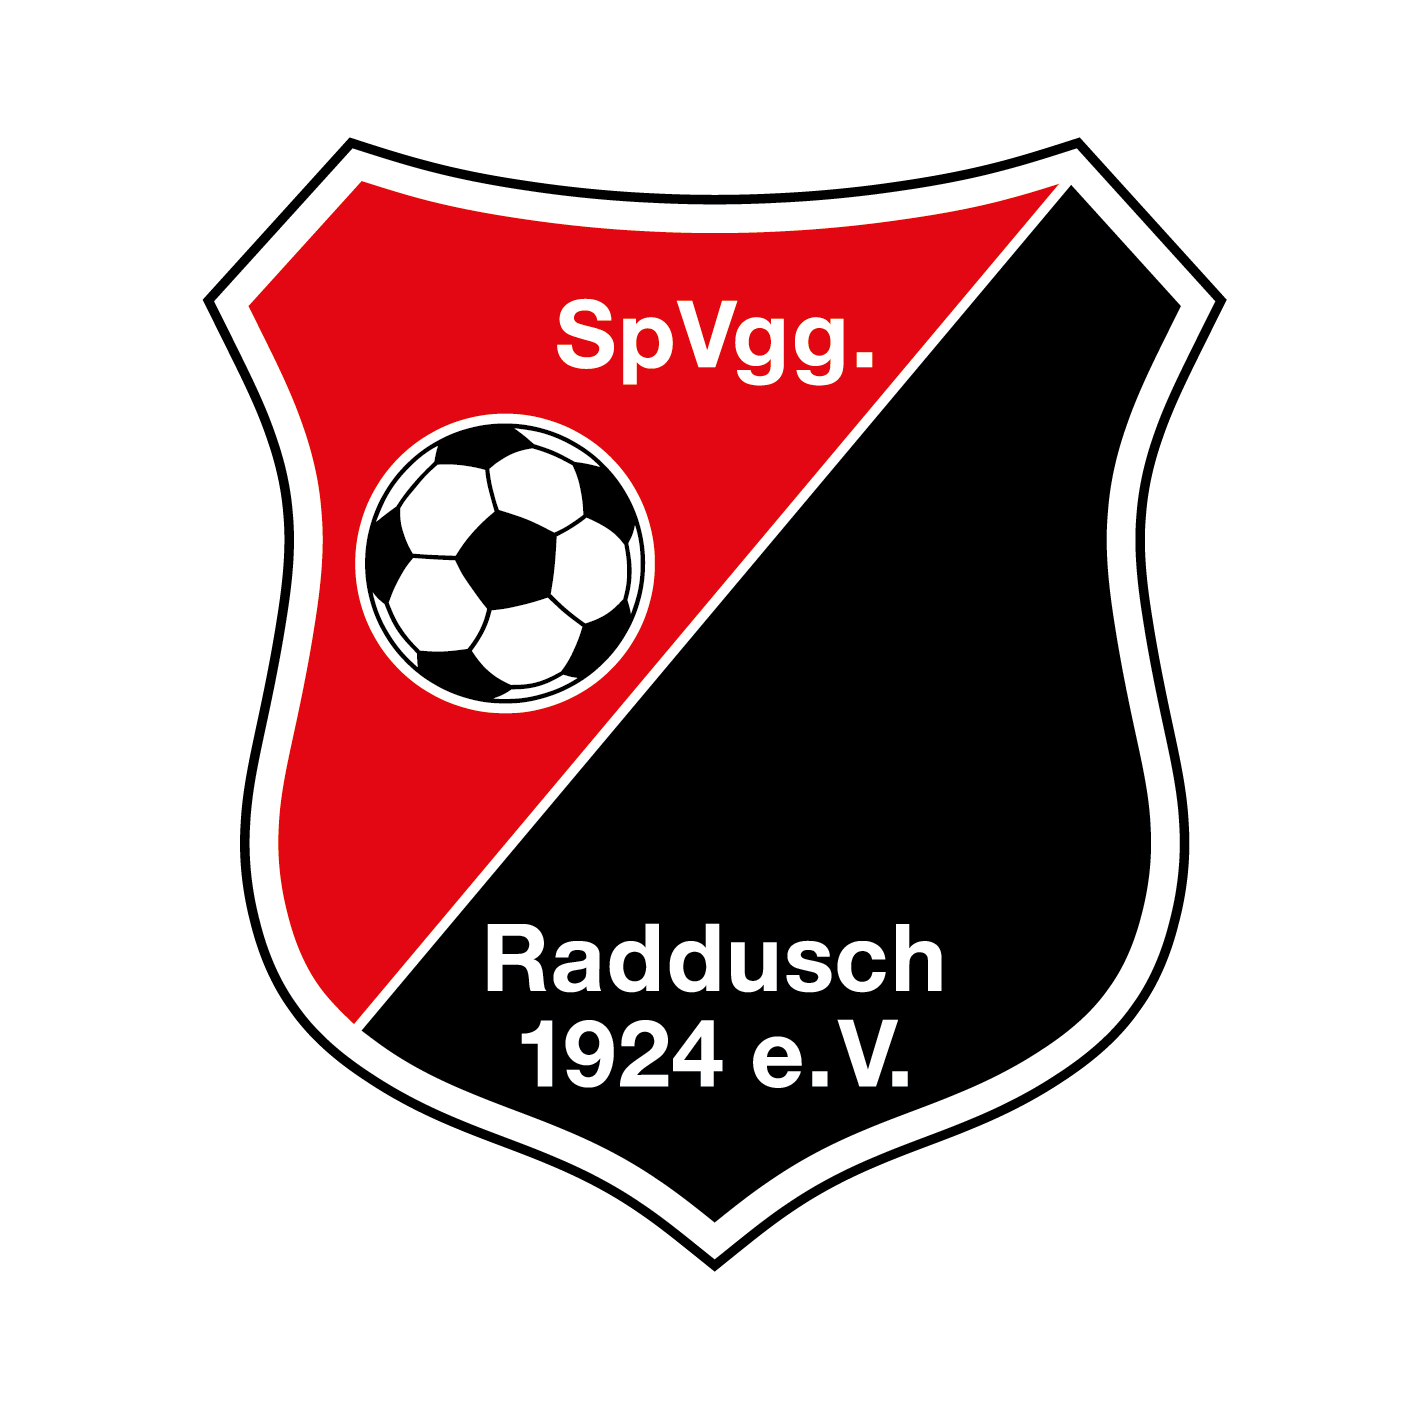 SPVGG RADDUSCH 1924 Logo